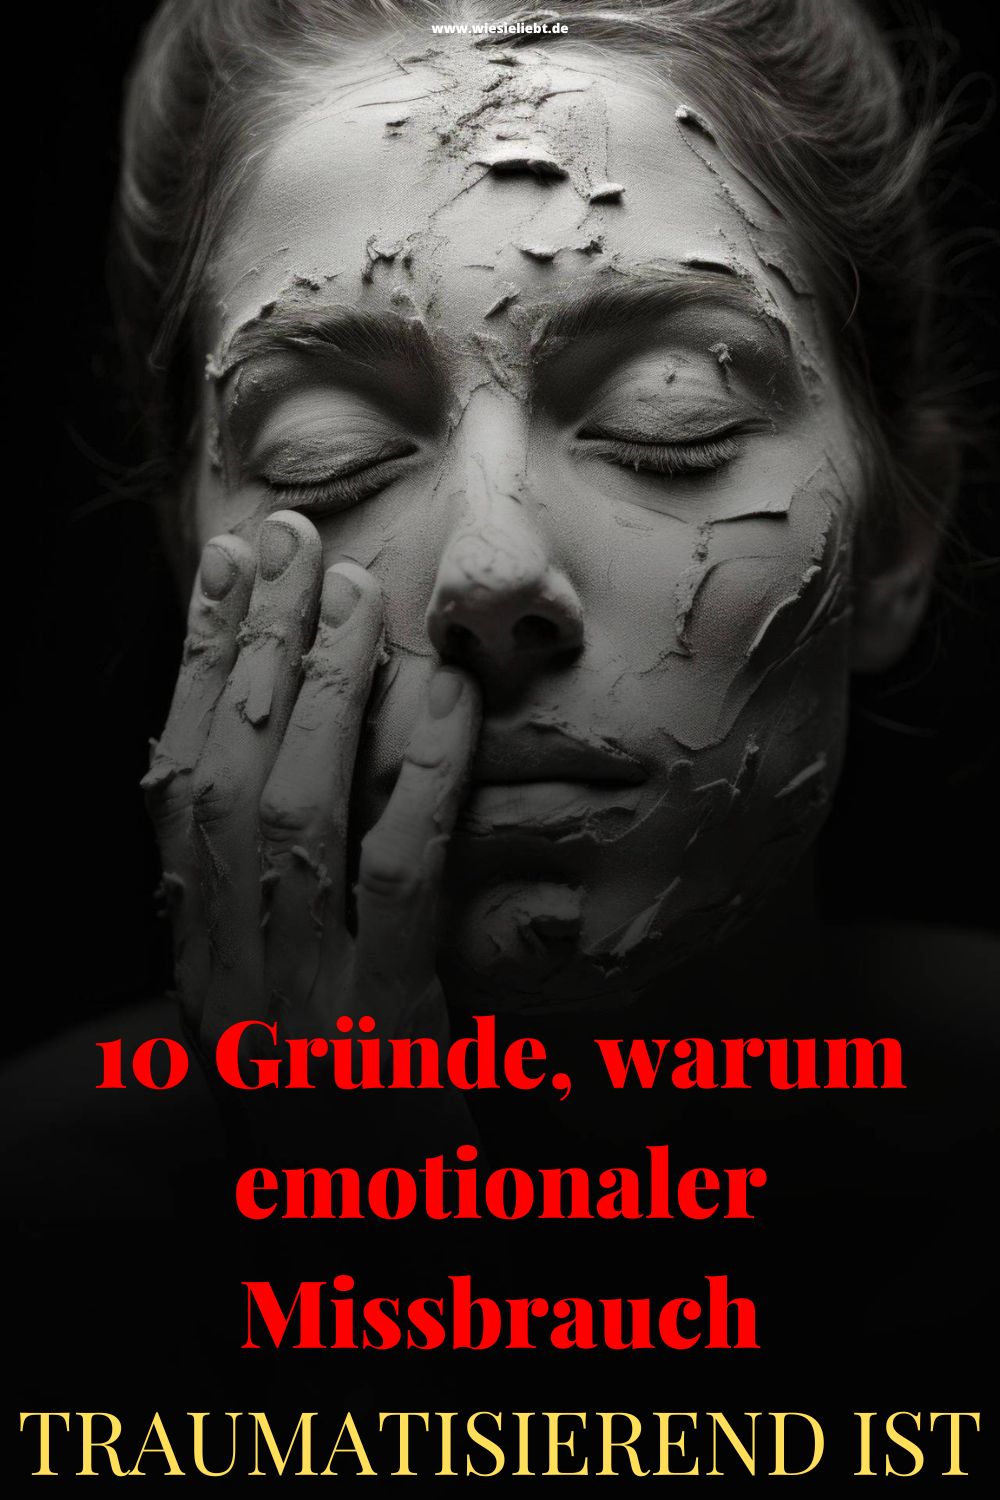 10-Gruende-warum-emotionaler-Missbrauch-traumatisierend-ist